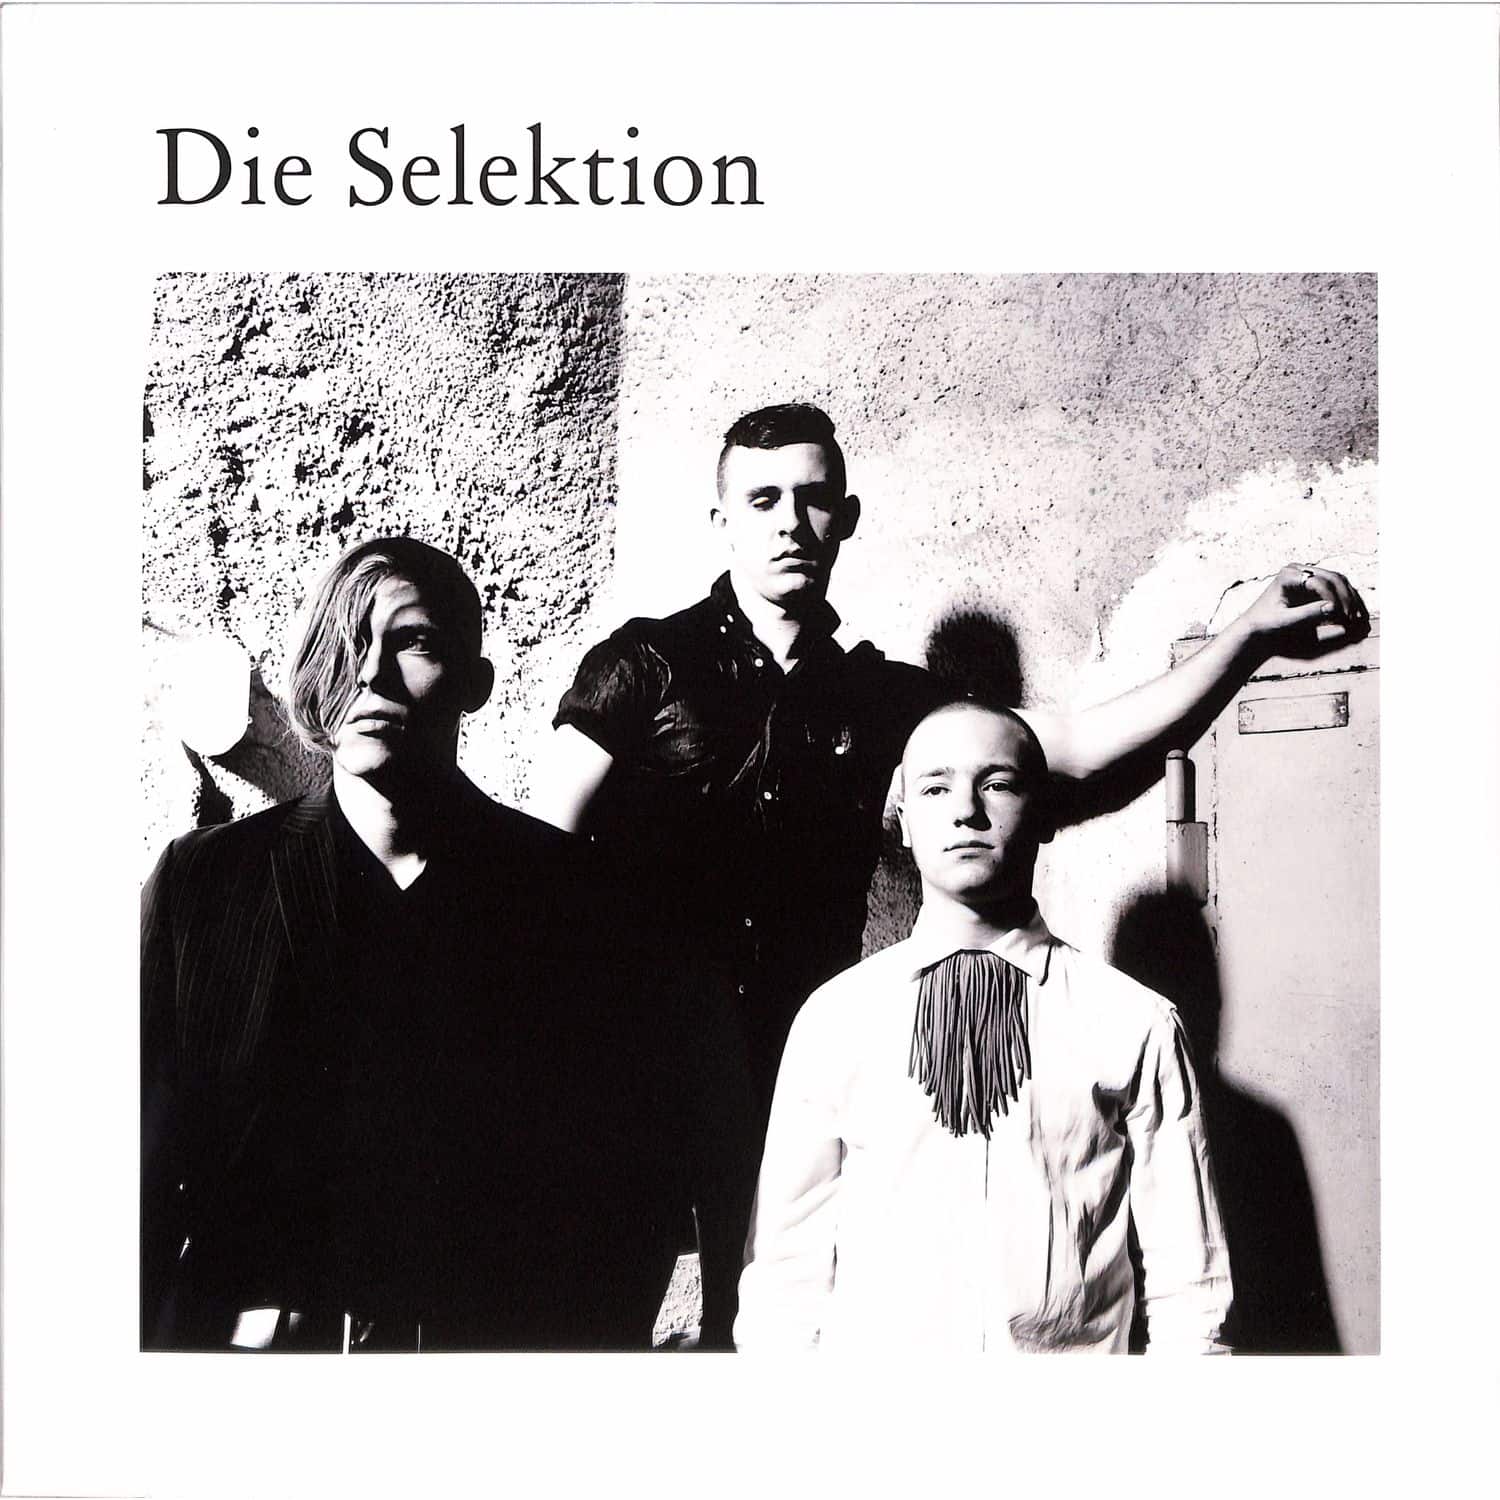 Die Selektion - DIE SELEKTION 